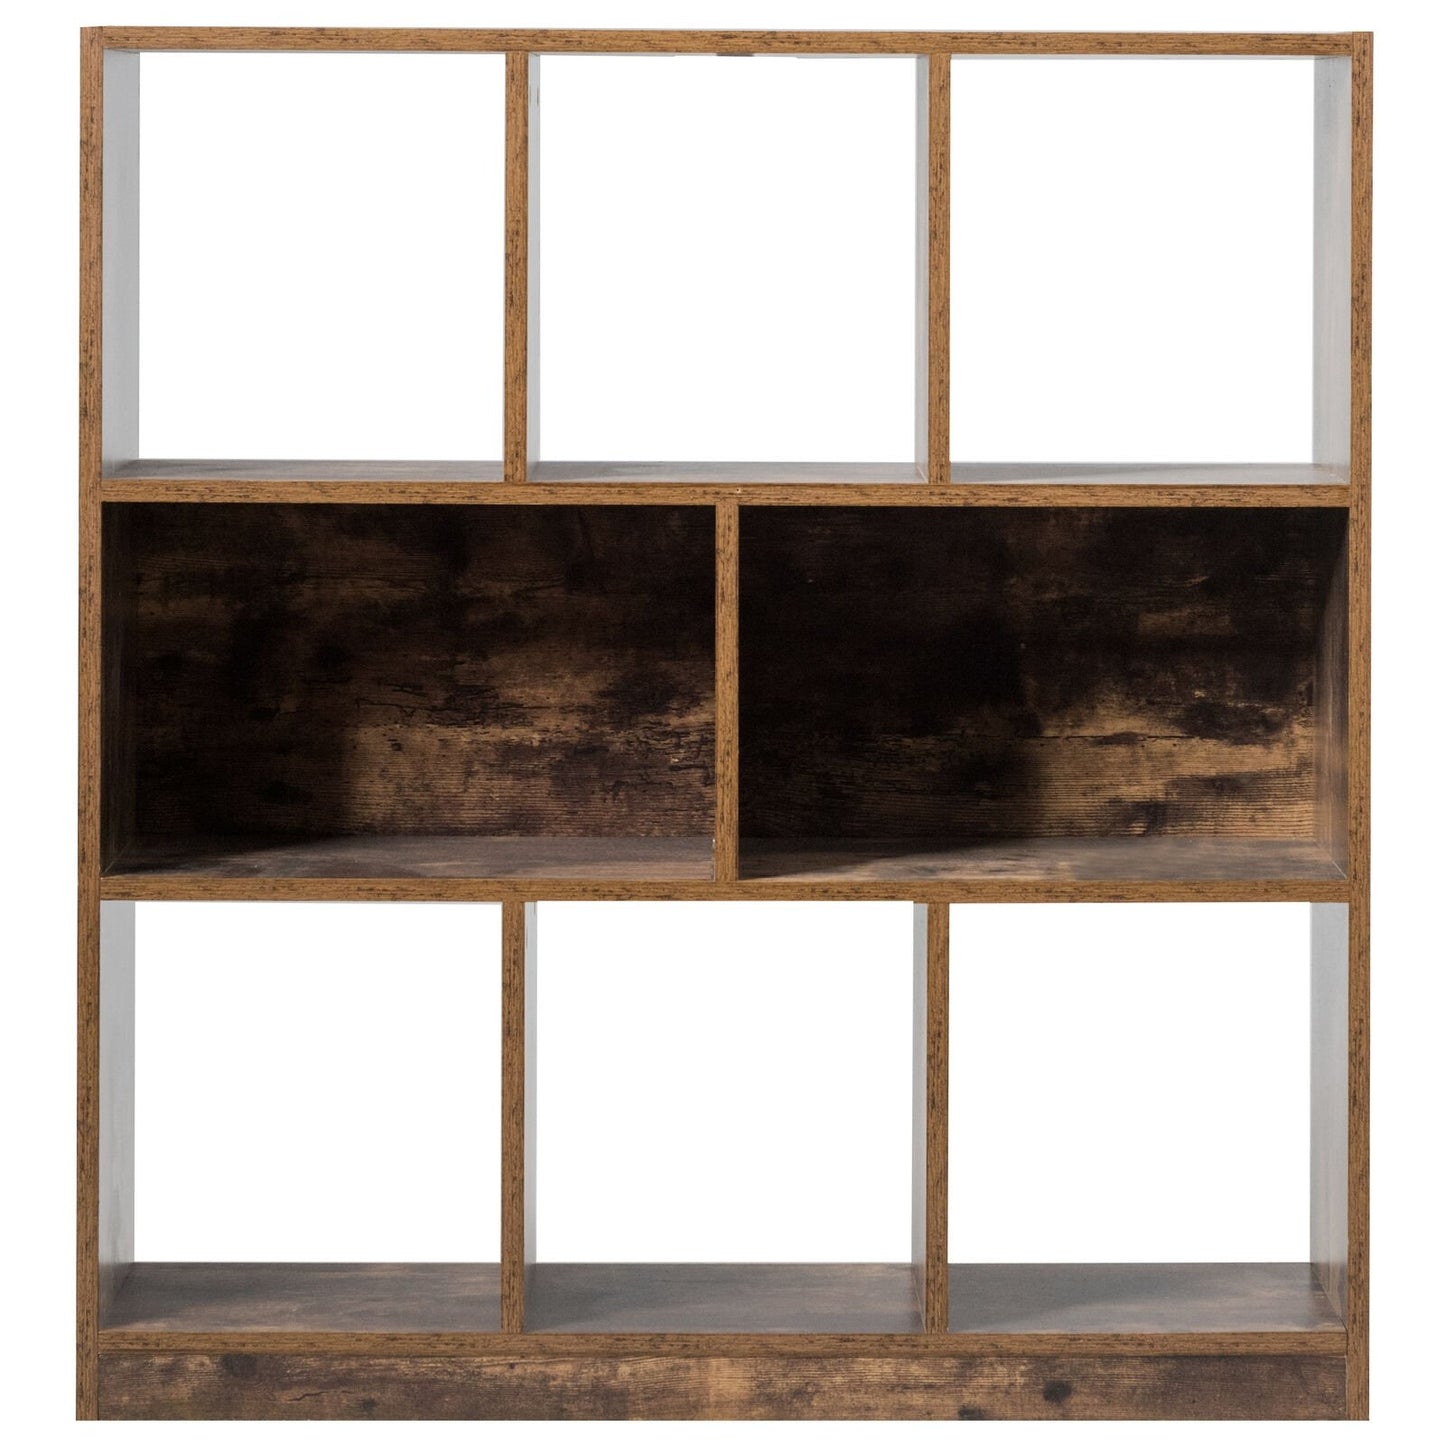 Open Compartments Industrial Freestanding Bookshelf, Brown